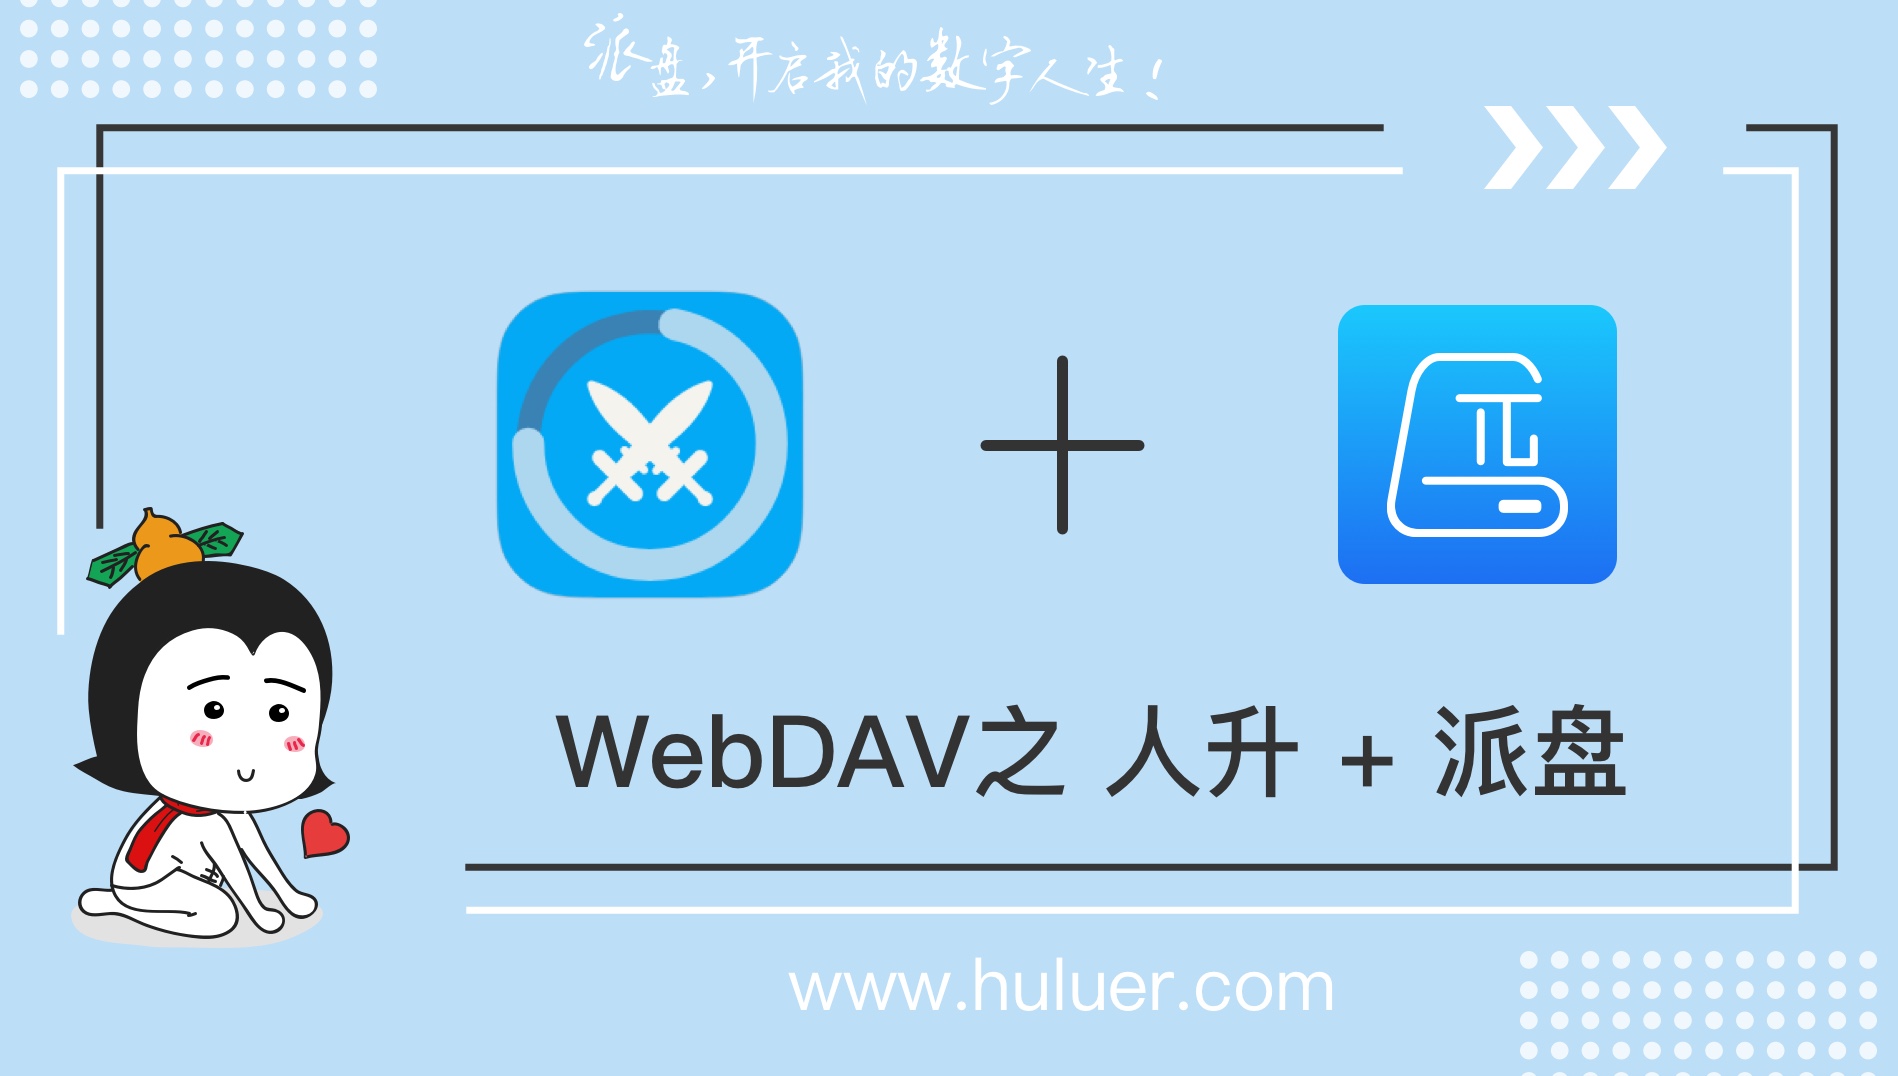 WebDAV之π-Disk派盘 + 人升